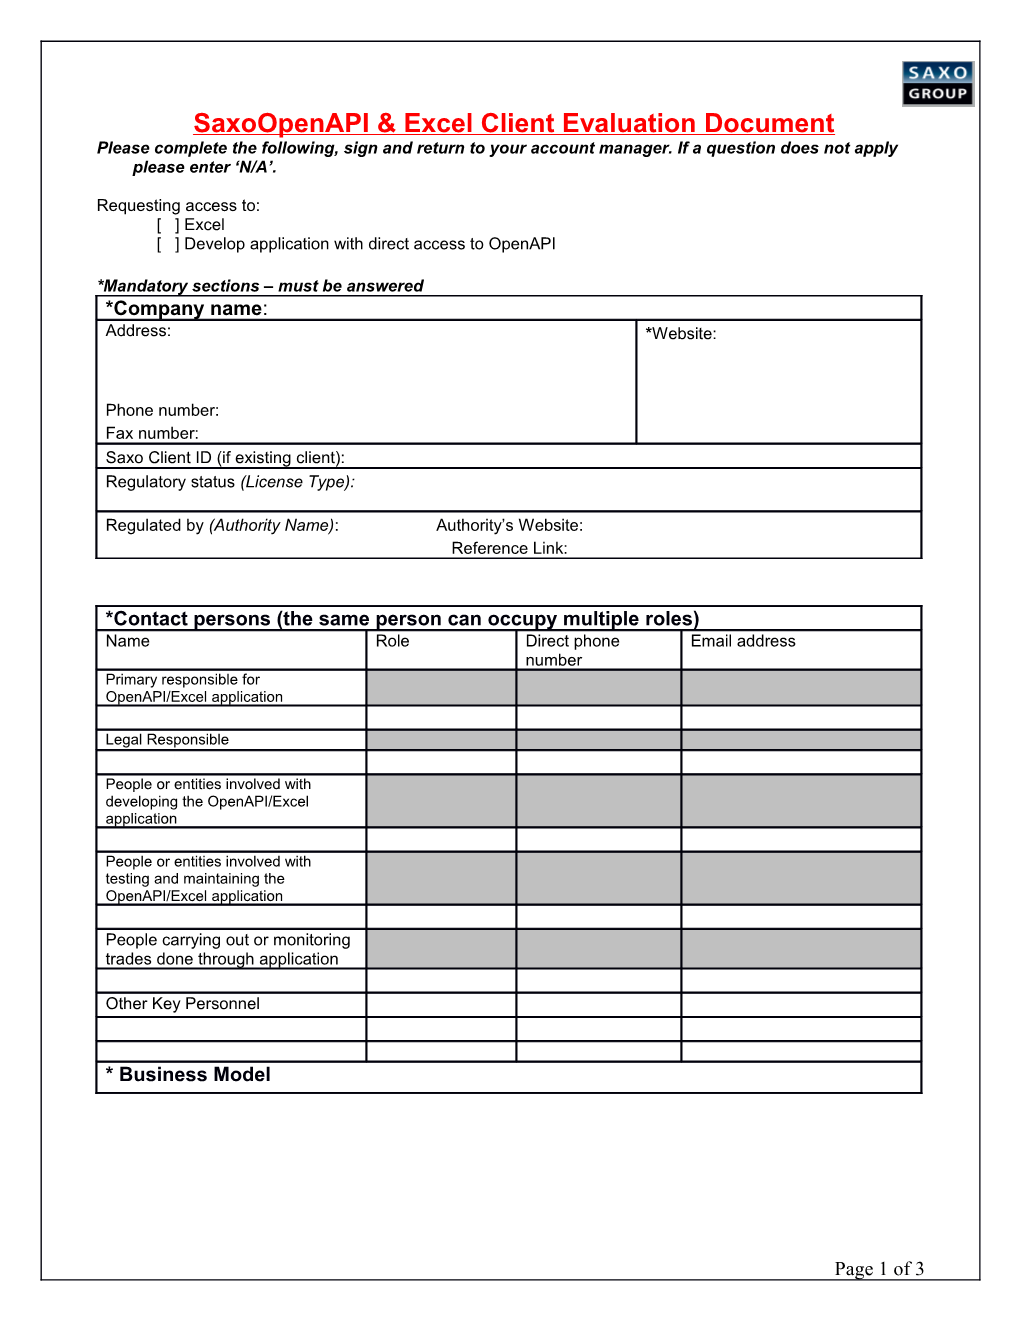 B2B Partner/Client Evaluation Document